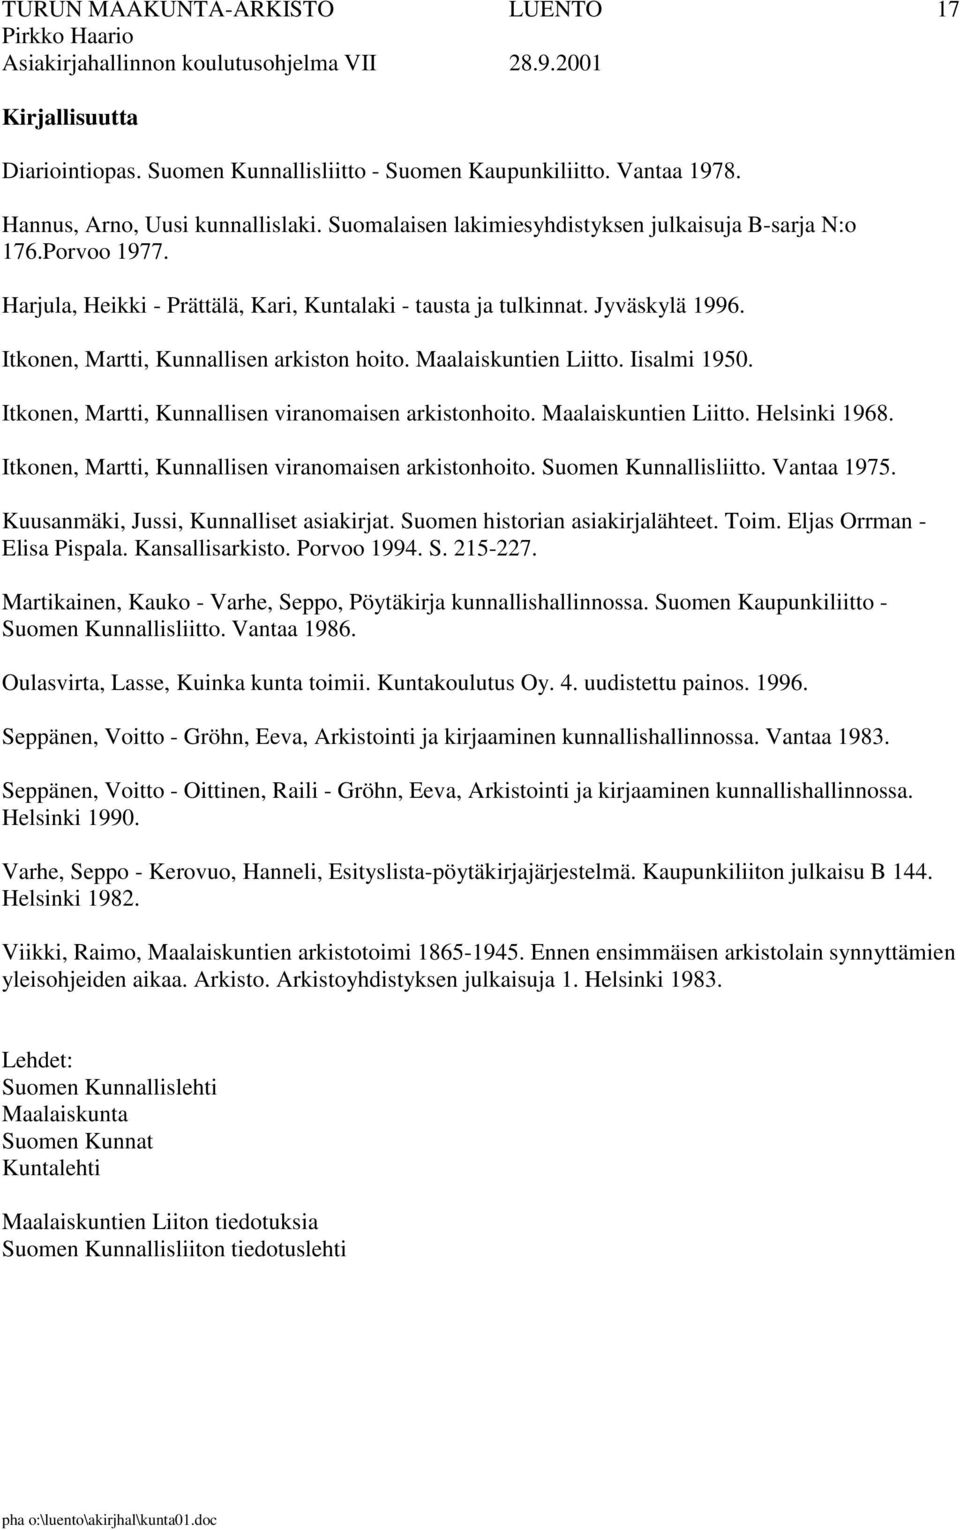 Itkonen, Martti, Kunnallisen viranomaisen arkistonhoito. Maalaiskuntien Liitto. Helsinki 1968. Itkonen, Martti, Kunnallisen viranomaisen arkistonhoito. Suomen Kunnallisliitto. Vantaa 1975.